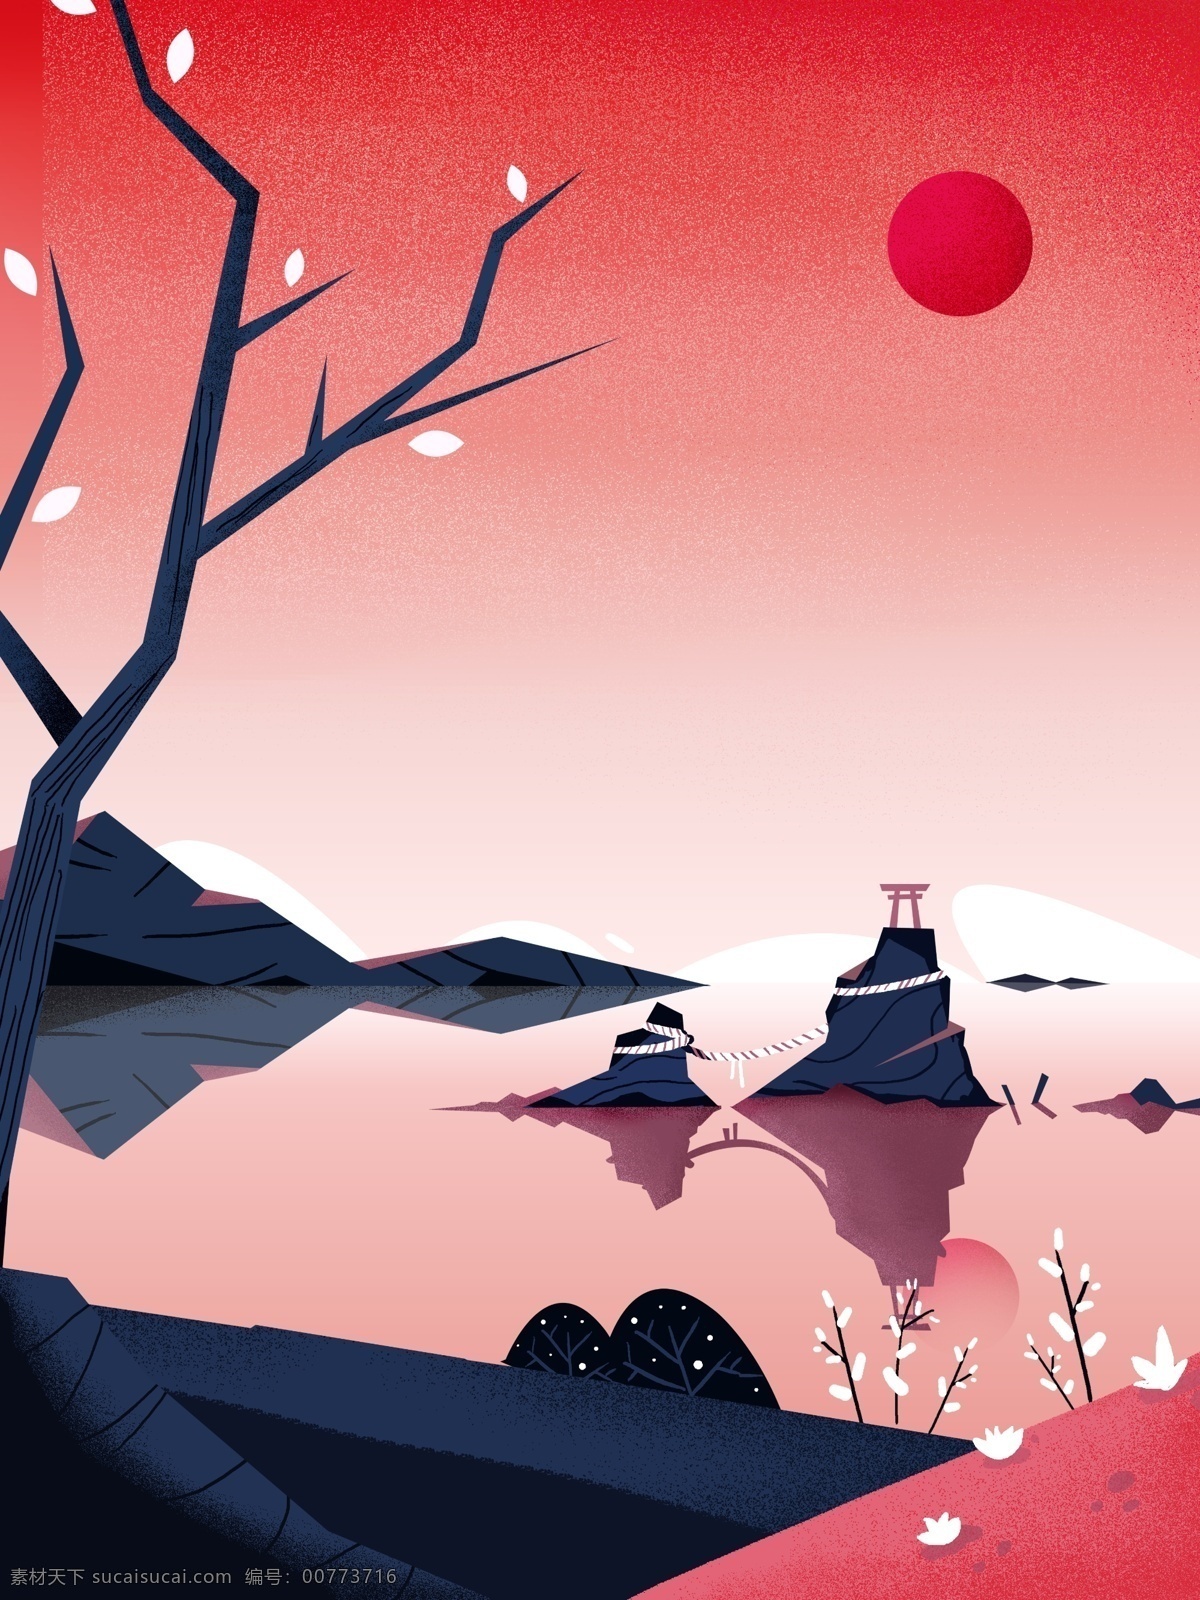 卡通 手绘 日本旅游 插画 背景 背景素材 背景展板 红色背景 山水背景 清新背景 唯美背景